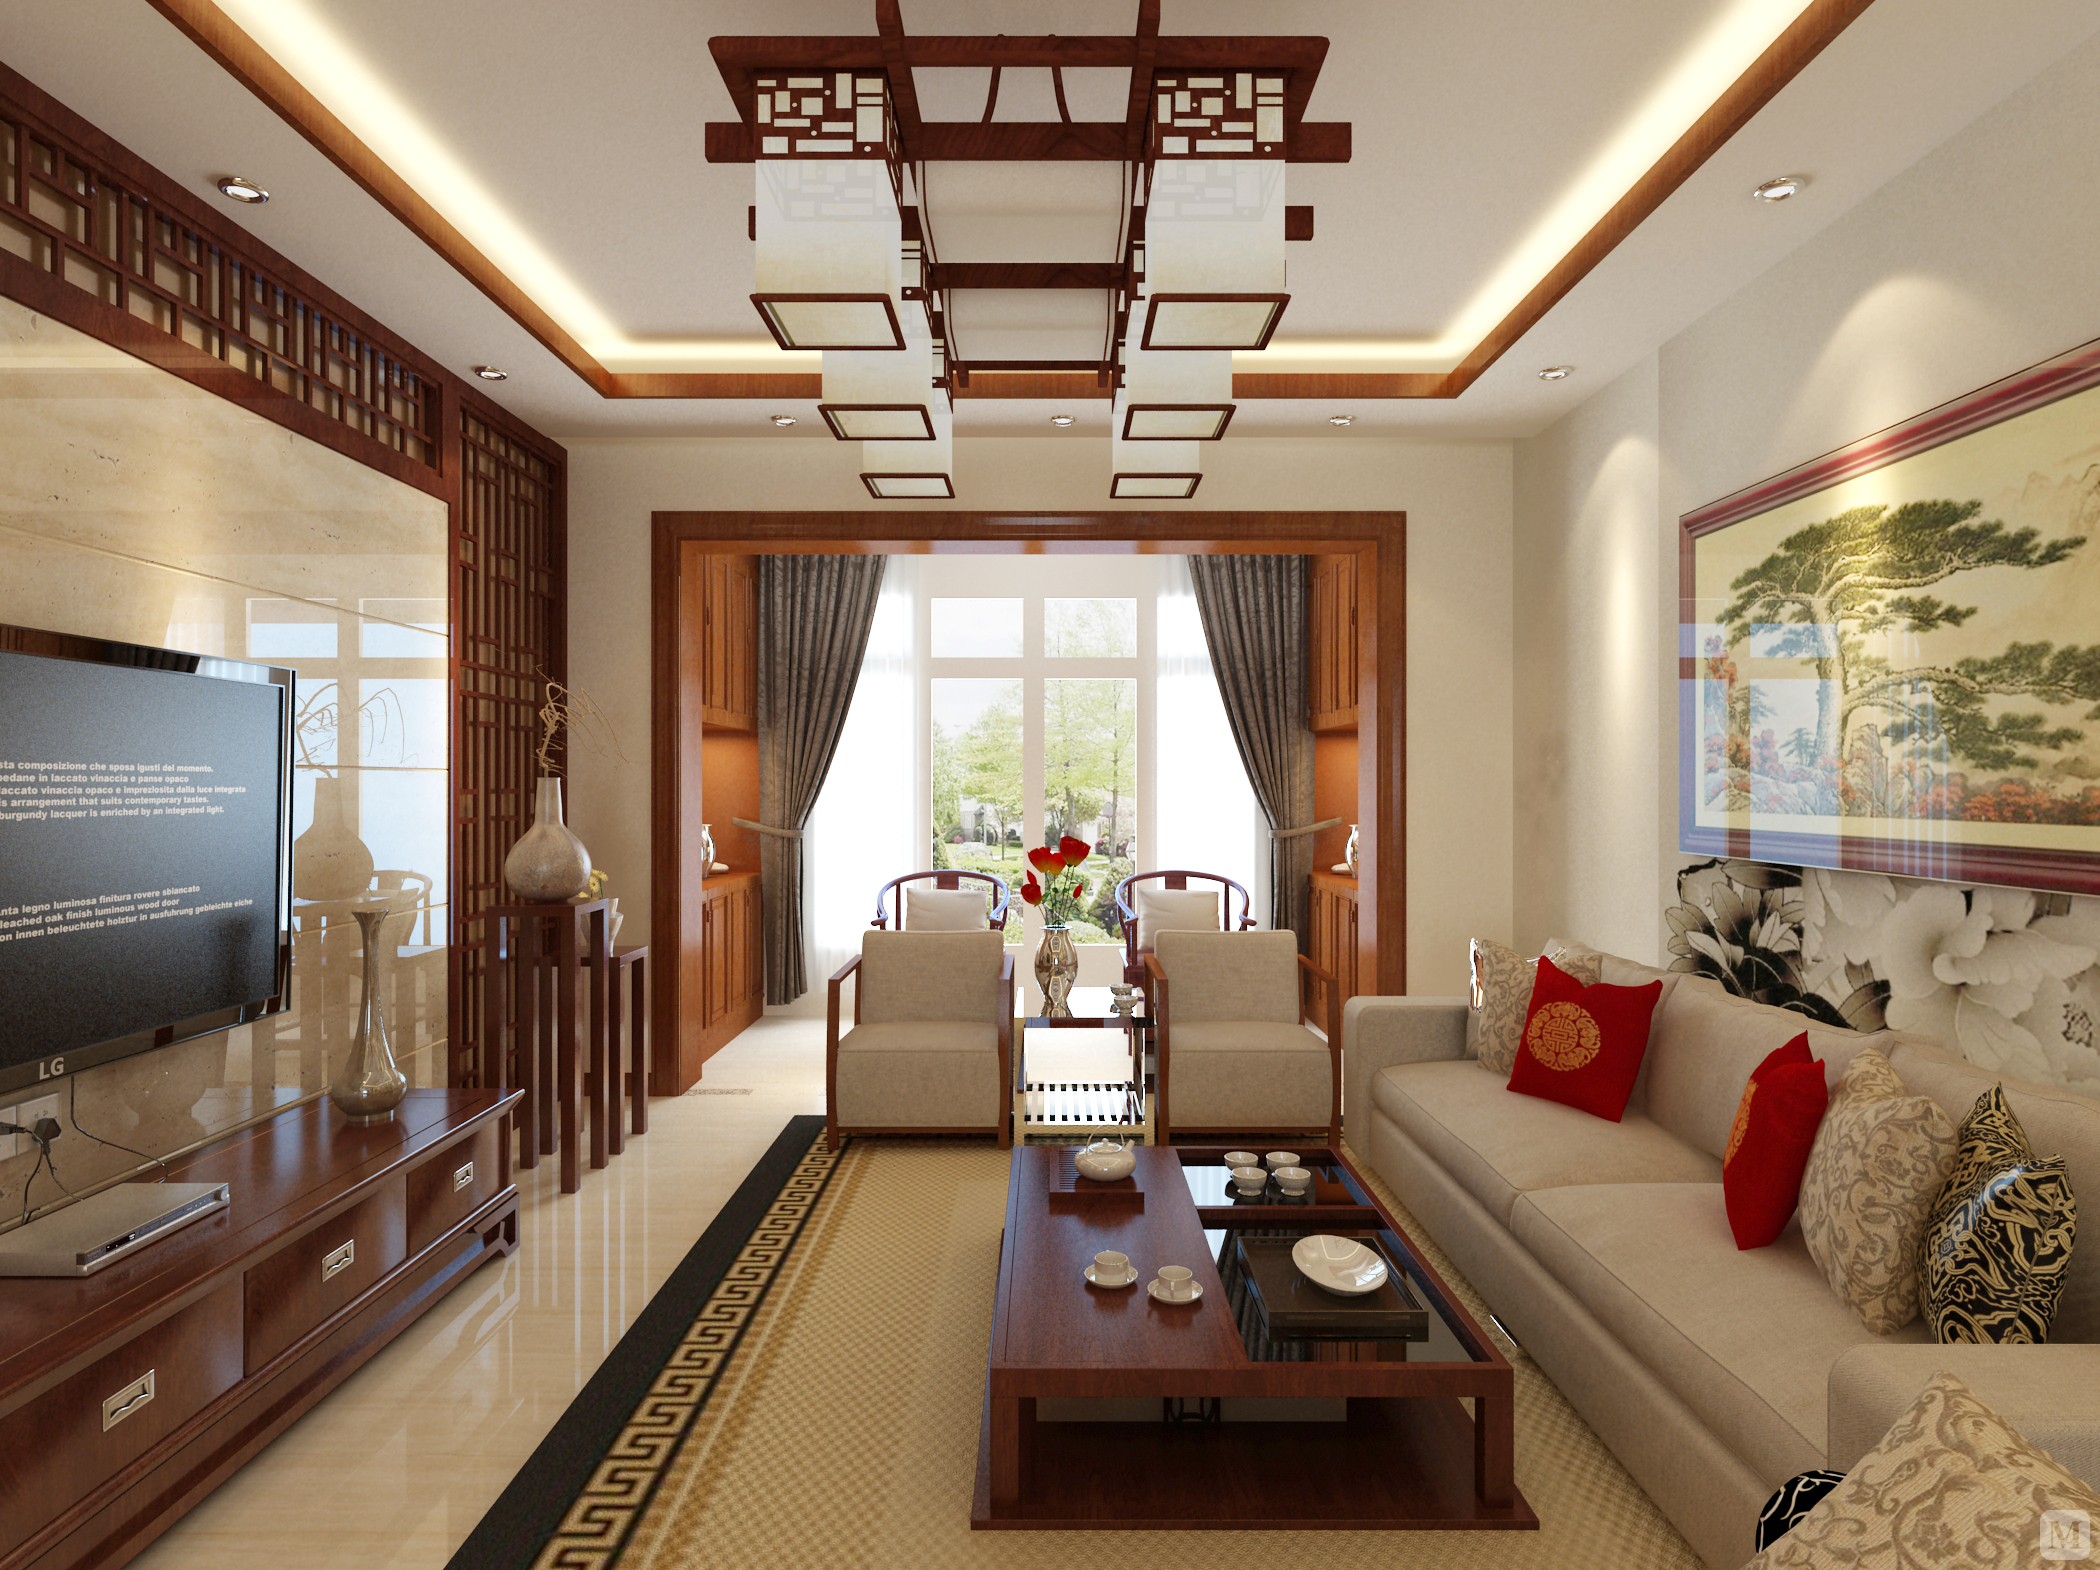 中国传统的室内设计融合了庄重与优雅双重气质,中式风格以宫廷建筑为